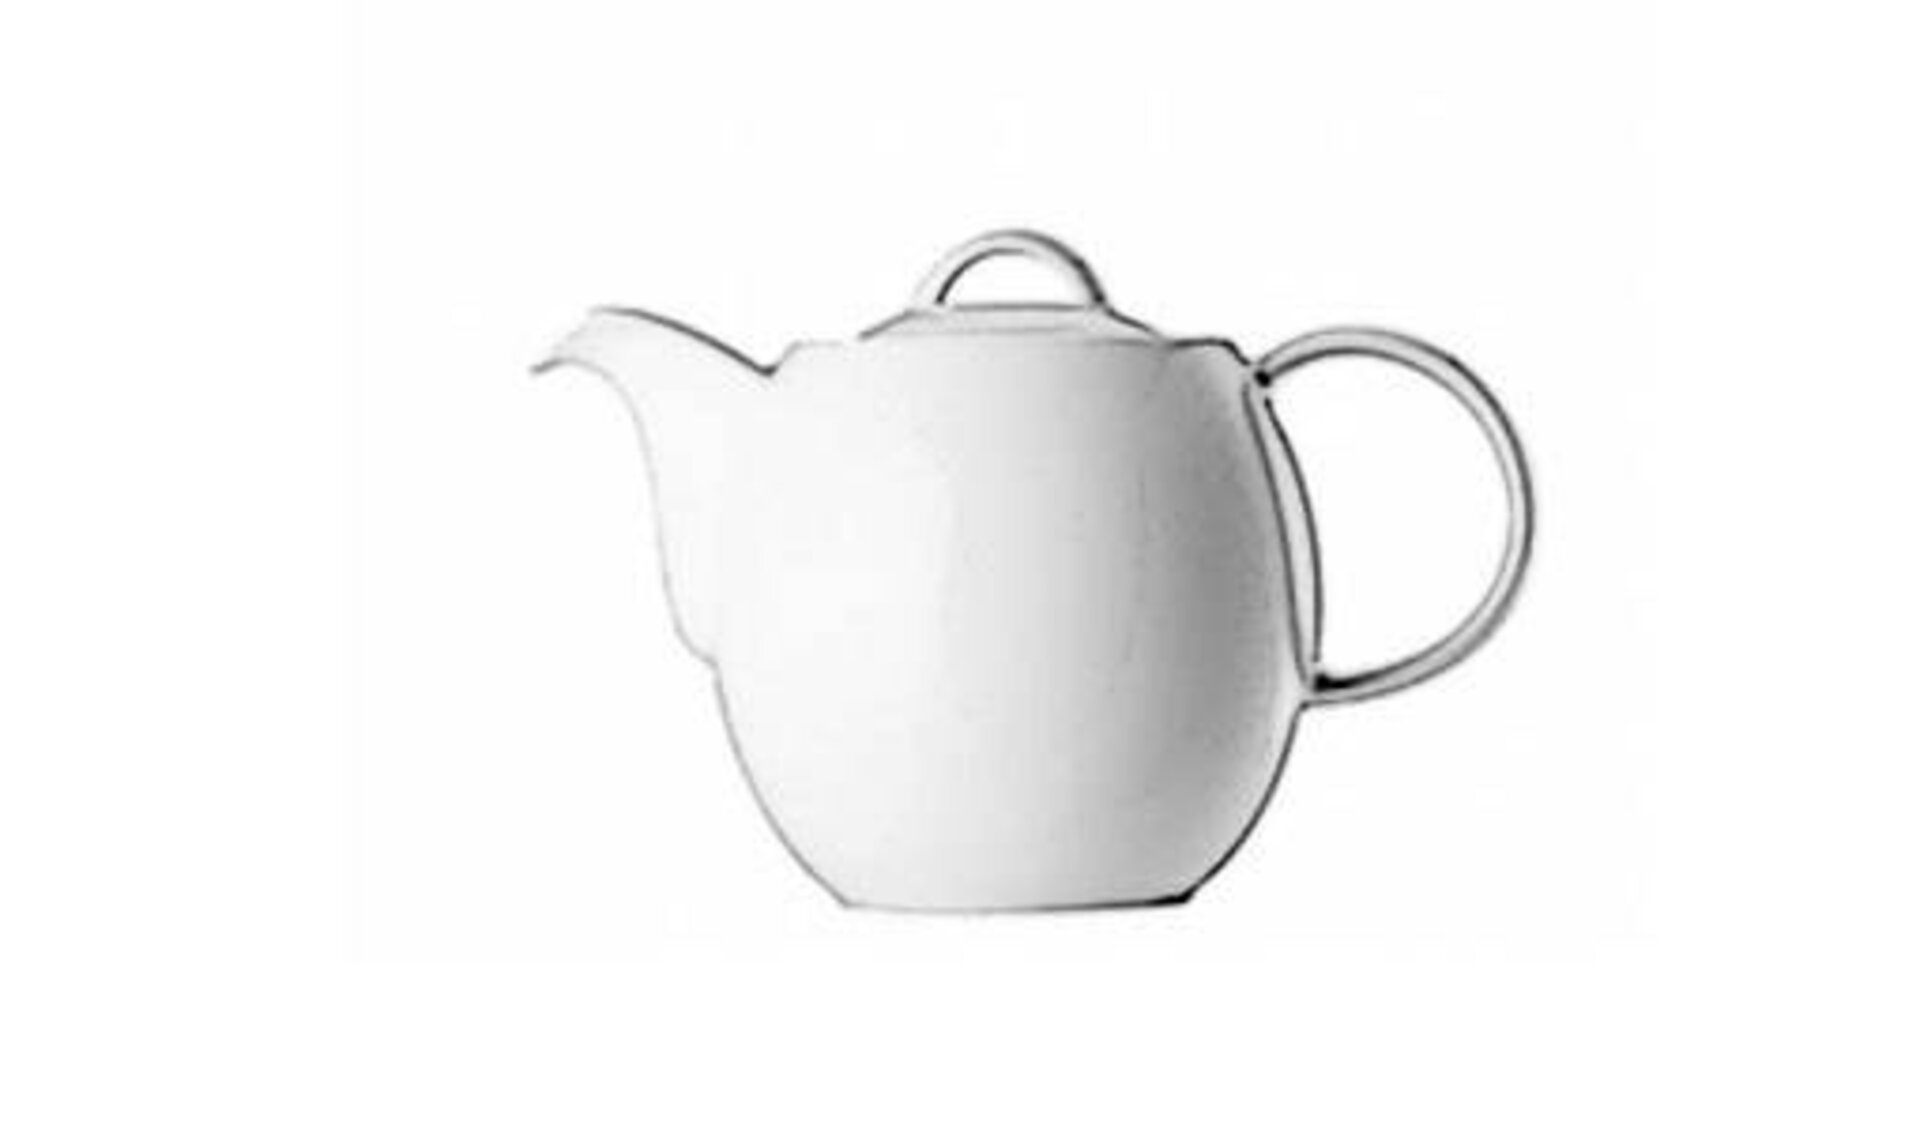 Weiße Teekanne mit dickem Bauch dient als Icon für alle Kannen.